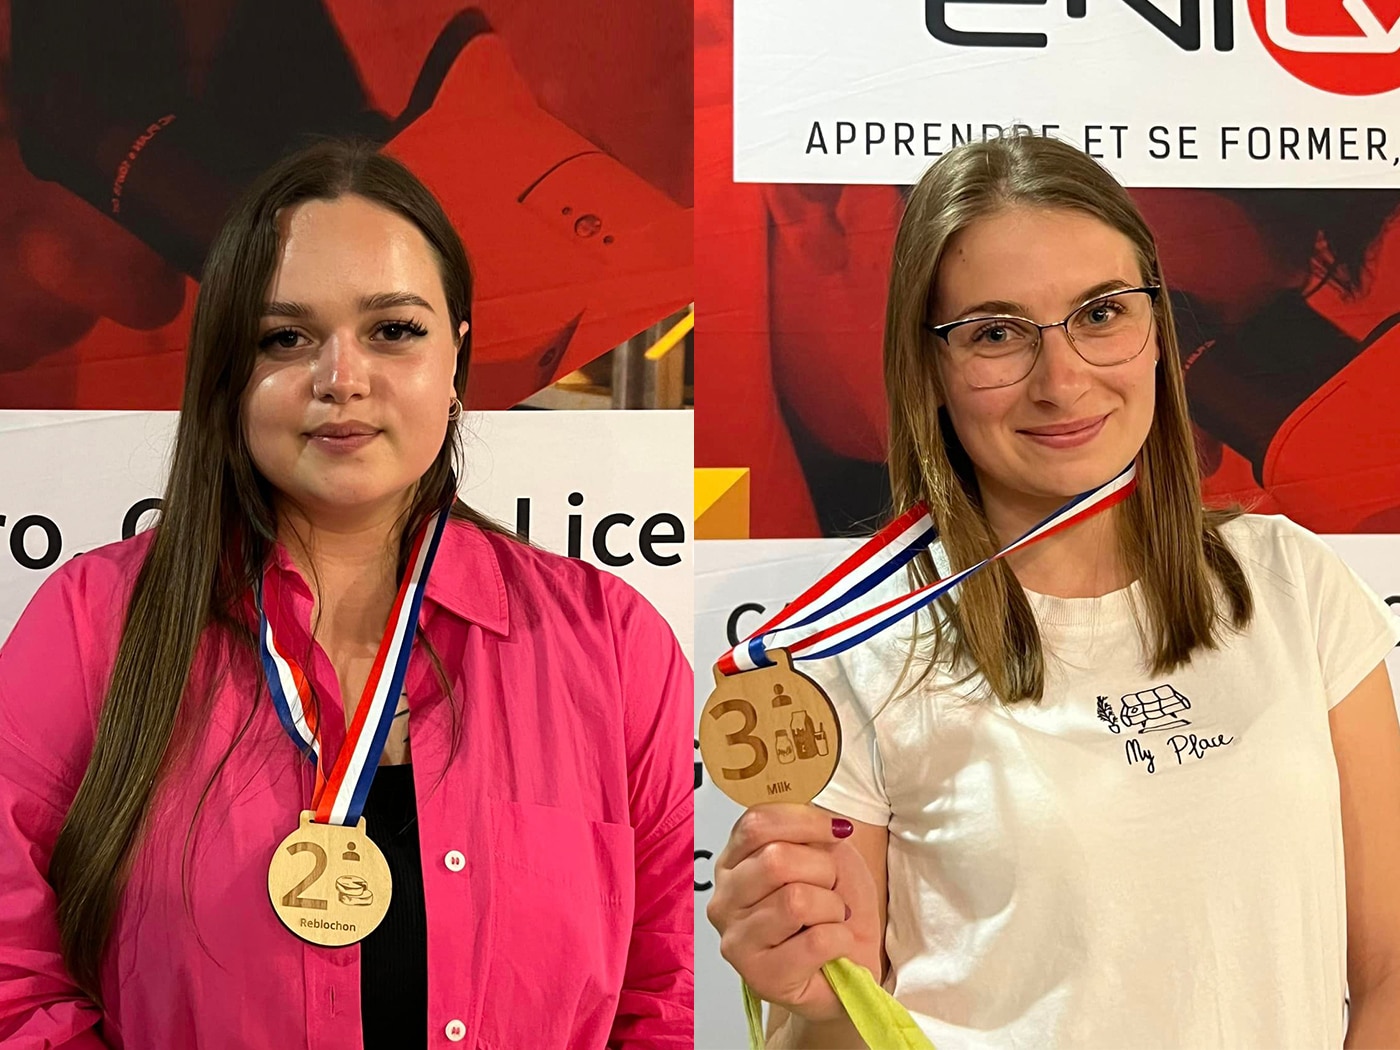 Dwa medale dla studentek UWM na prestiżowym konkursie mleczarskim uwm Olsztyn, Wiadomości, zShowcase